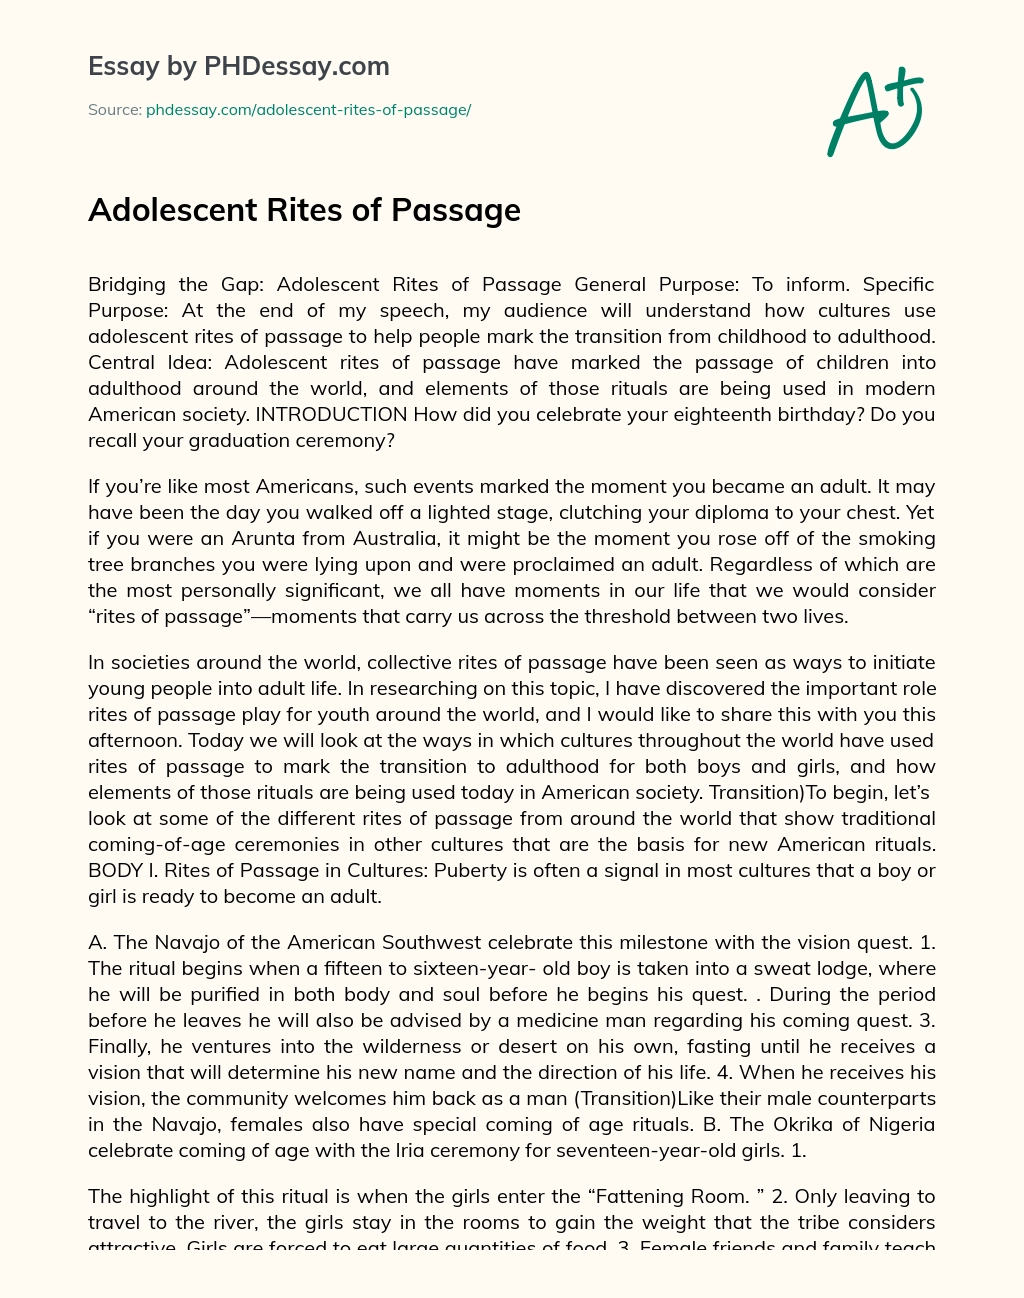 Adolescent Rites of Passage essay